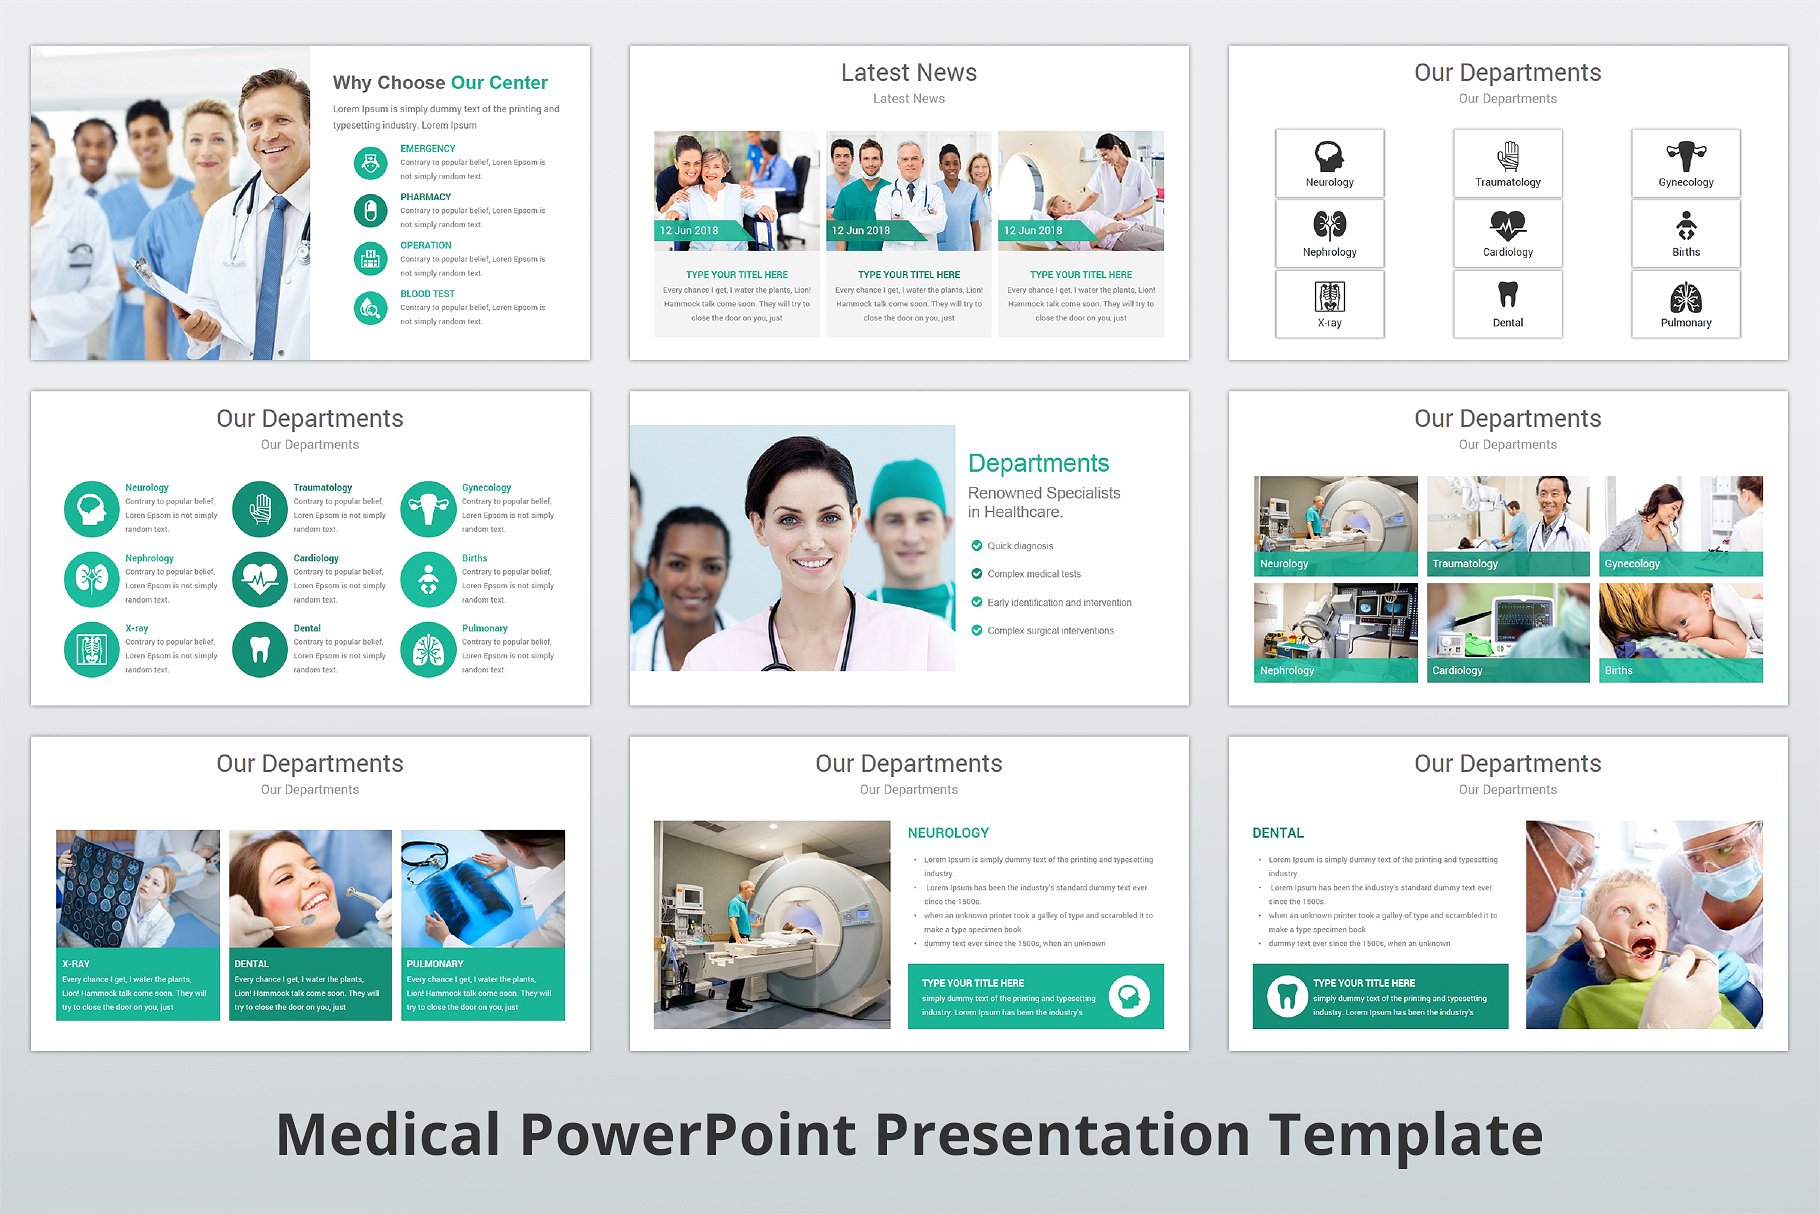 高品质医疗行业演示的PPT模板下载 Medical PowerPoint Template [pptx]插图(6)